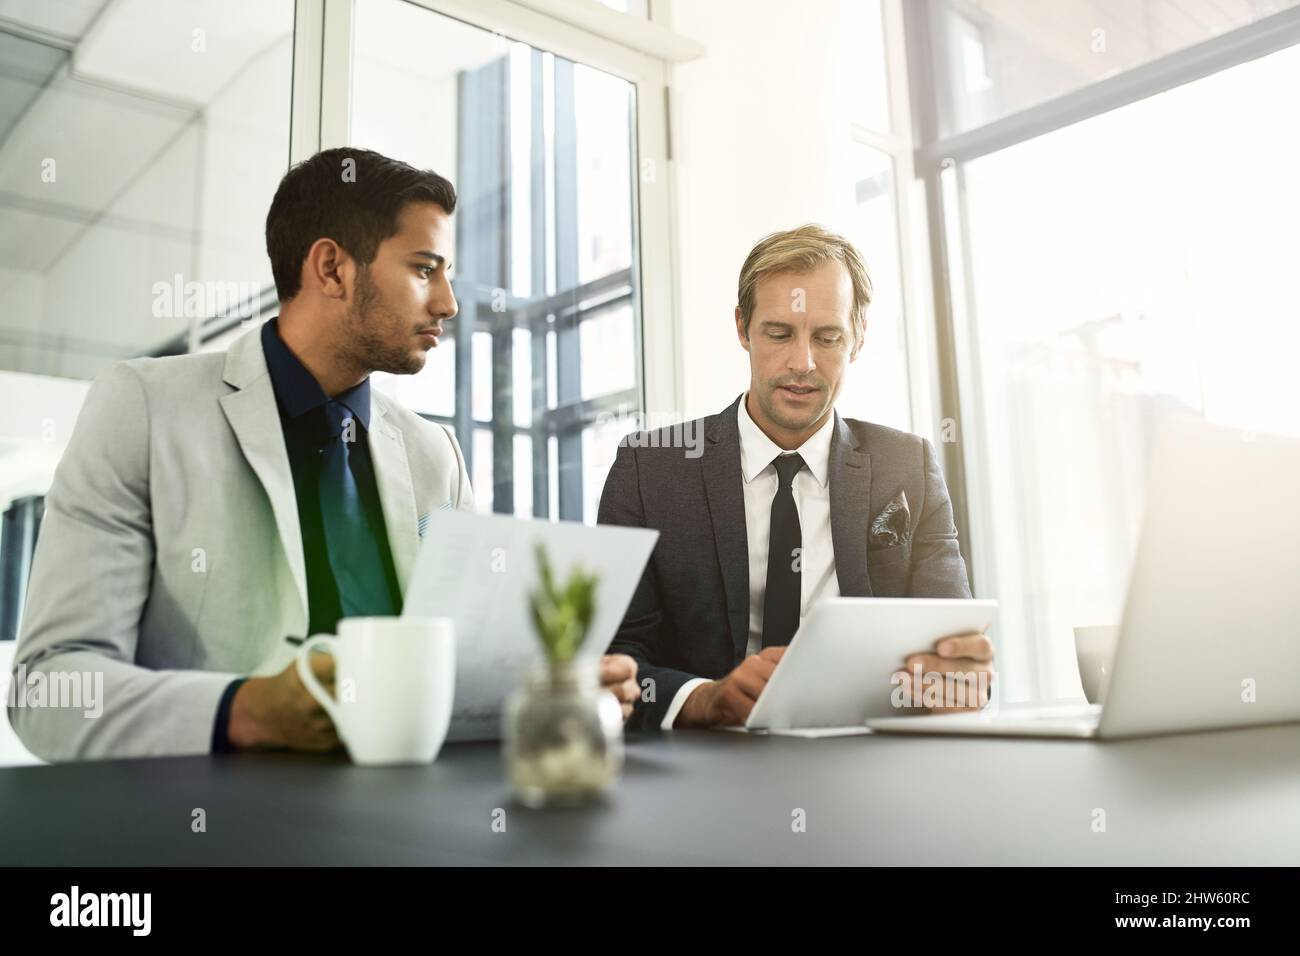 La technologie leur permet de traiter plus d'informations que les méthodes manuelles. Photo de deux hommes d'affaires ayant une discussion dans un bureau. Banque D'Images